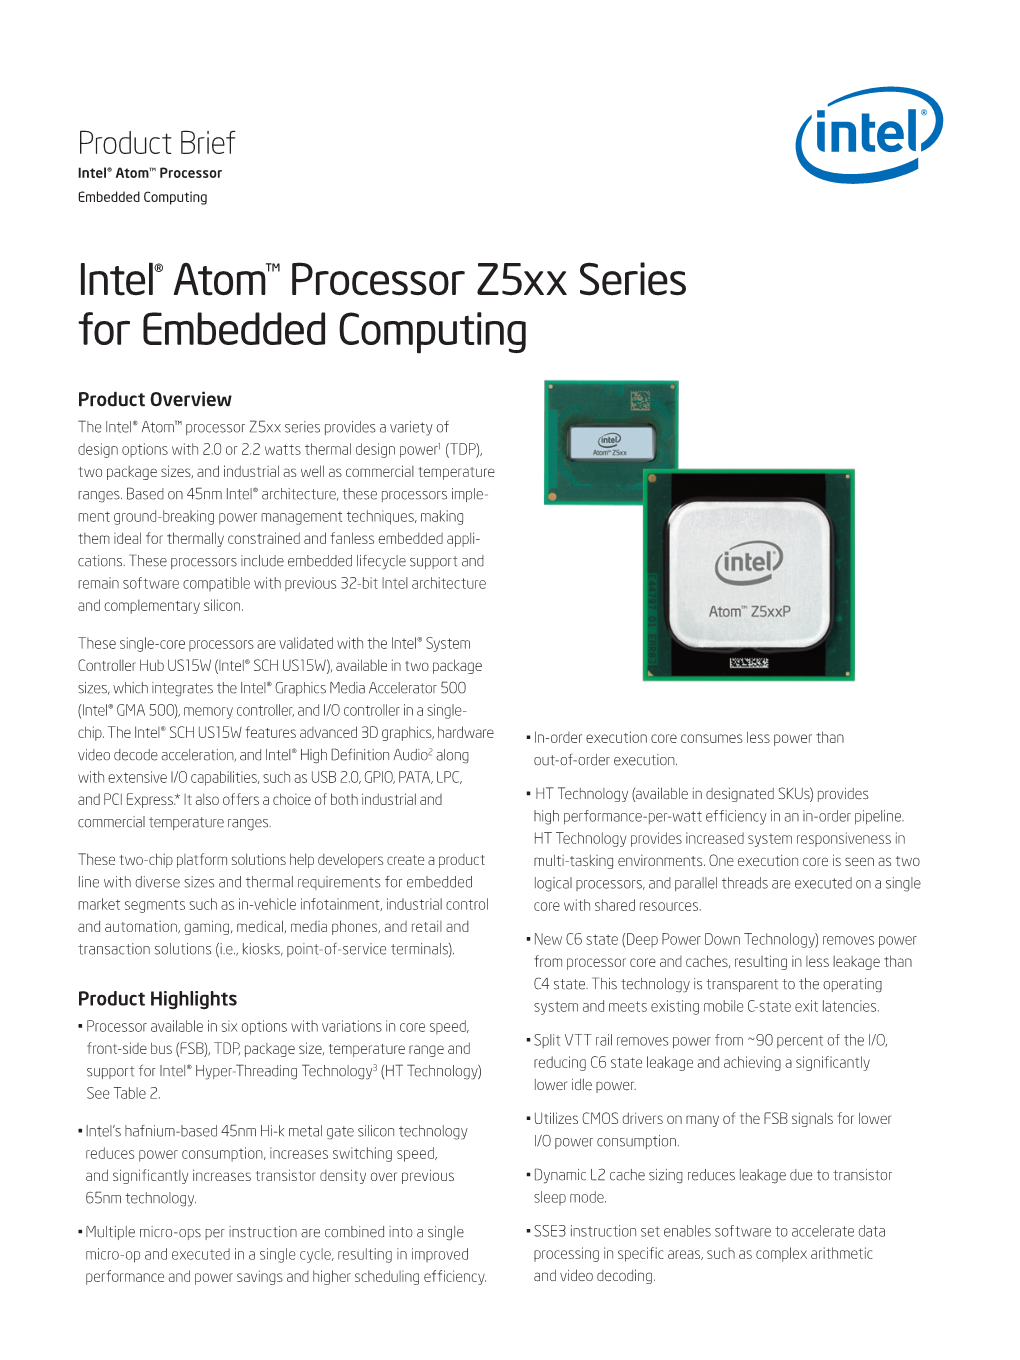 Intel® Atom™ Processor Z5xx Series for Embedded Computing